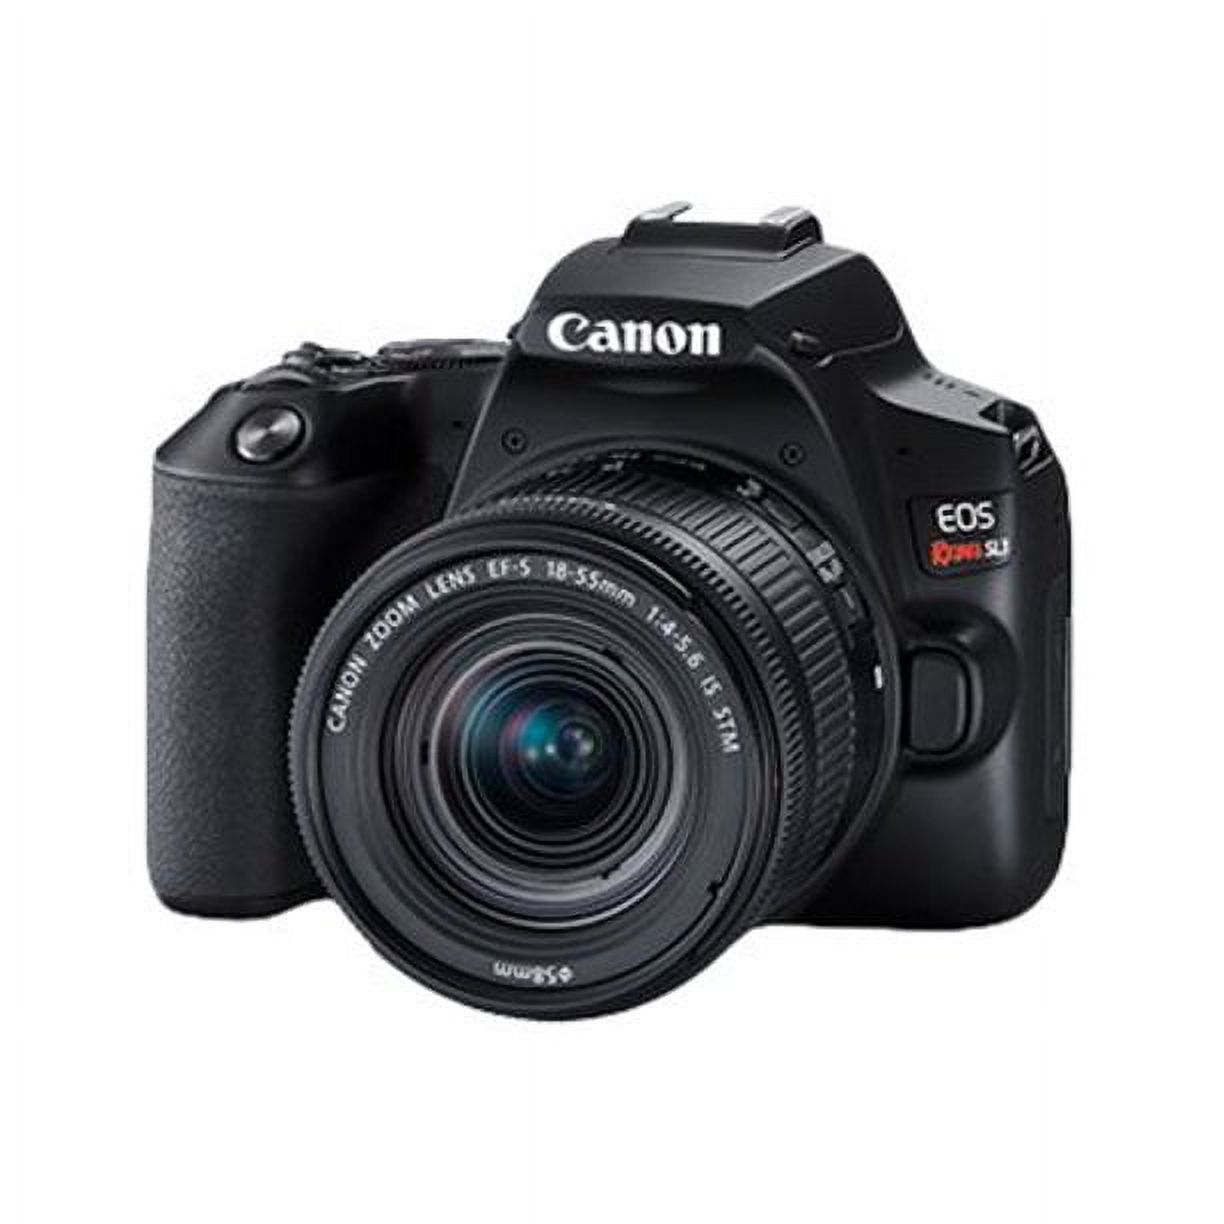 Canon EOS Rebel SL3 - Digital camera - SLR - 24.1 MP - APS-C - 4K / 24 fps - 3x optical zoom EF-S 18-55mm IS STM lens - Wi-Fi, Bluetooth - black - image 1 of 2